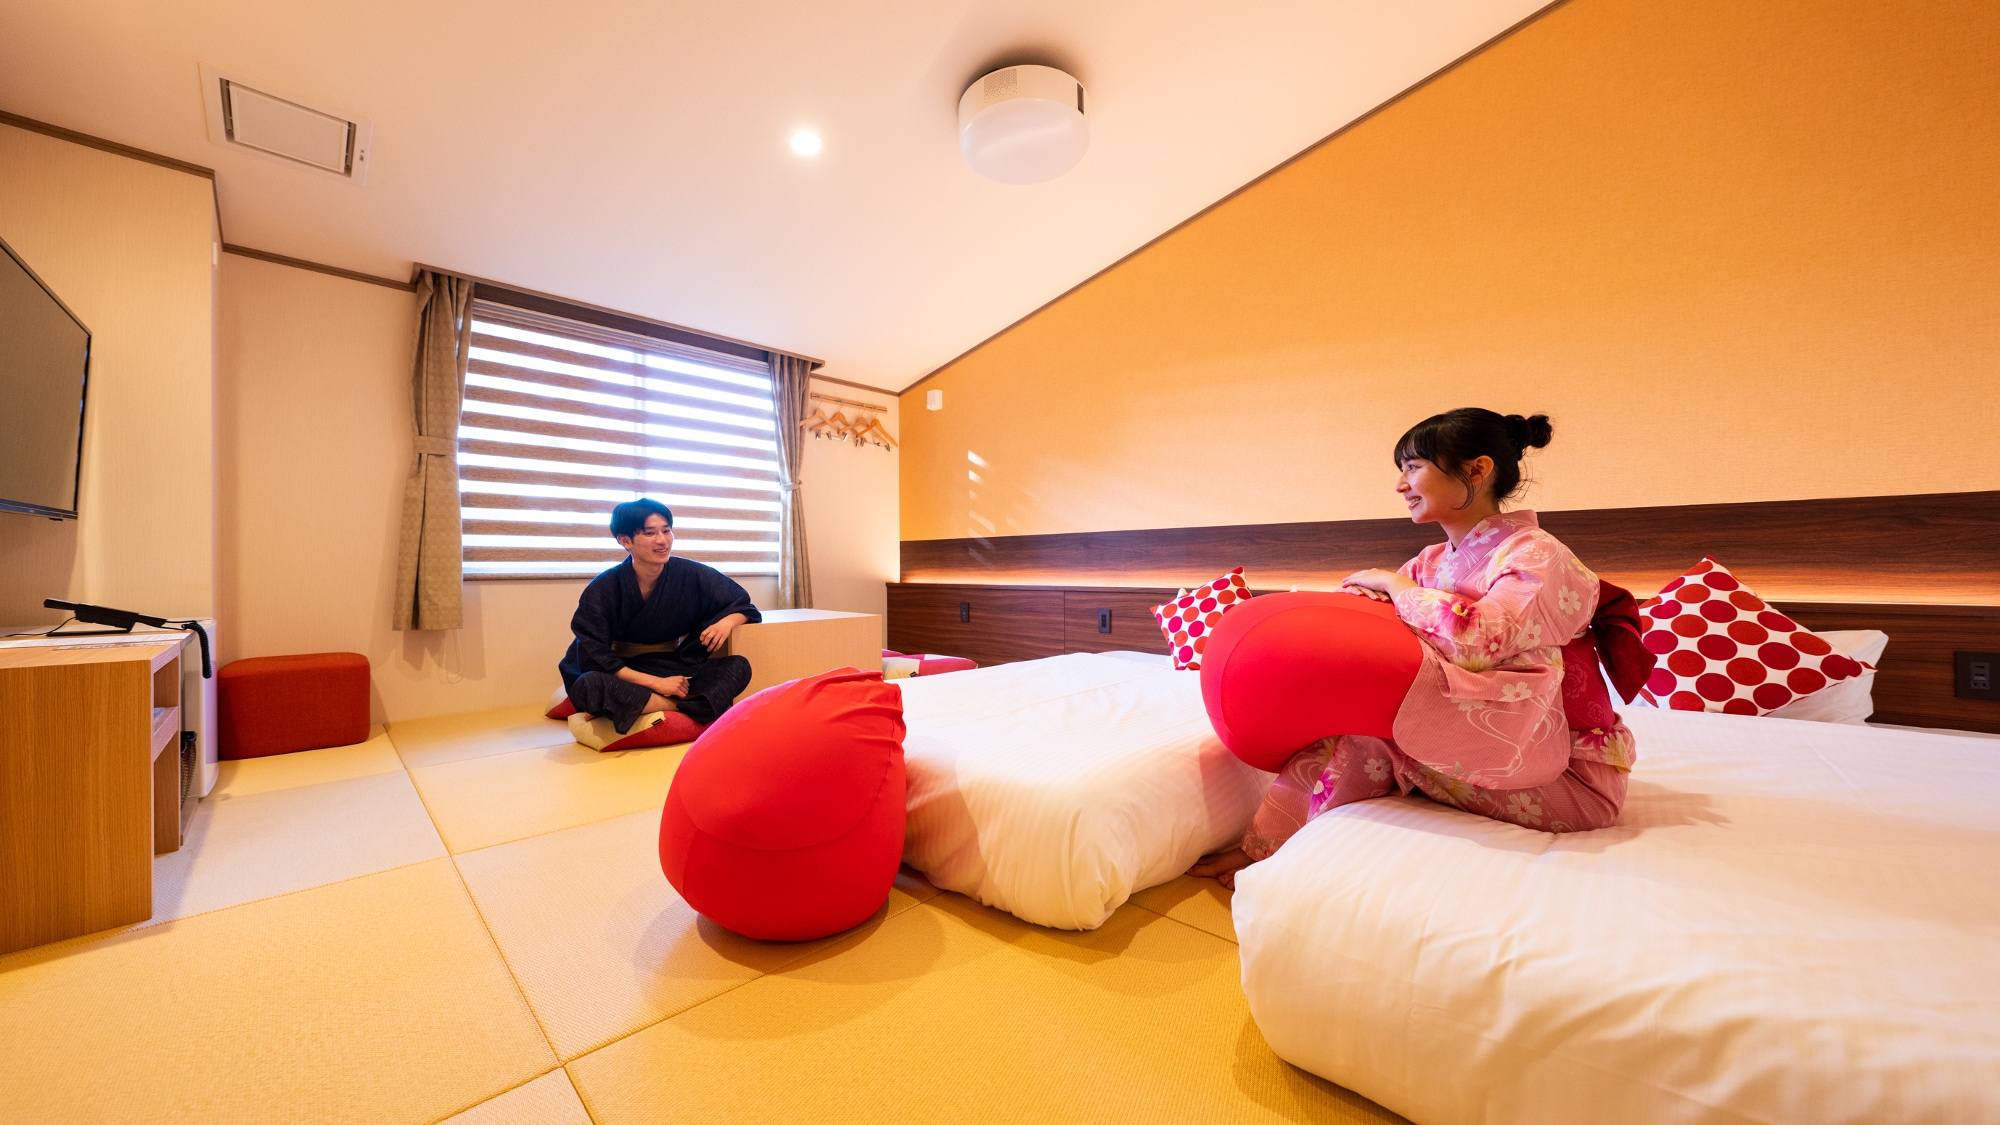 【컴팩트 별관 일본식 방】 부담없이 묵을 수 있는 심플한 일본식 방. 다다미 깔개로 세미 더블 사이즈의 침대 첨부.